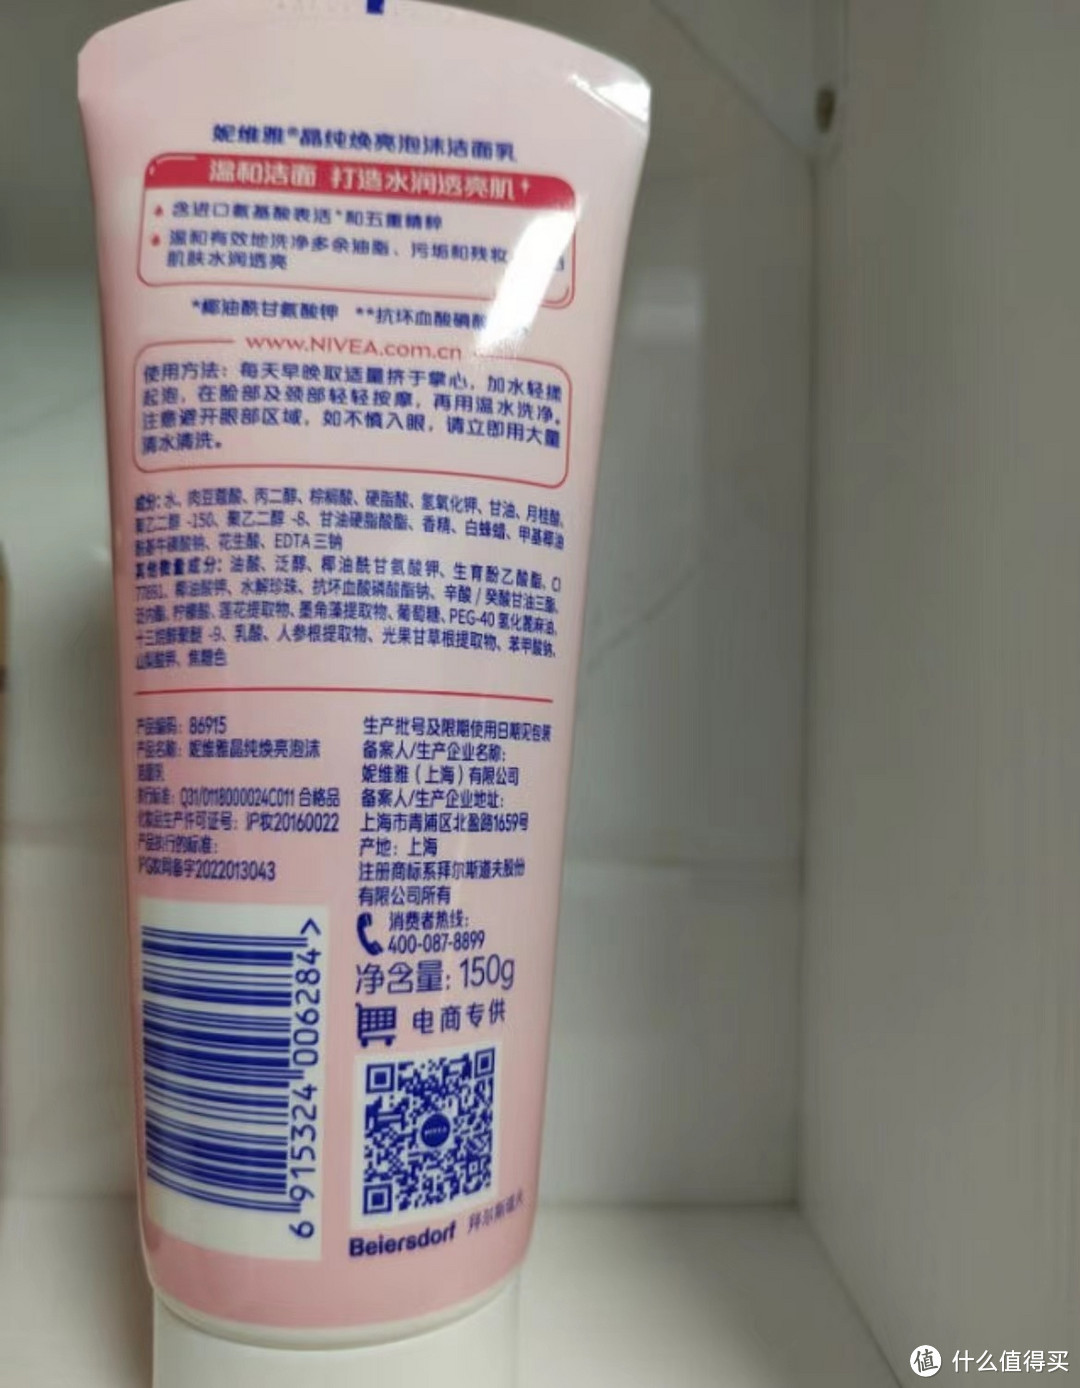 如果你也是油性肌肤的朋友，不妨试试这款洗面奶吧！相信你一定会爱上它的。